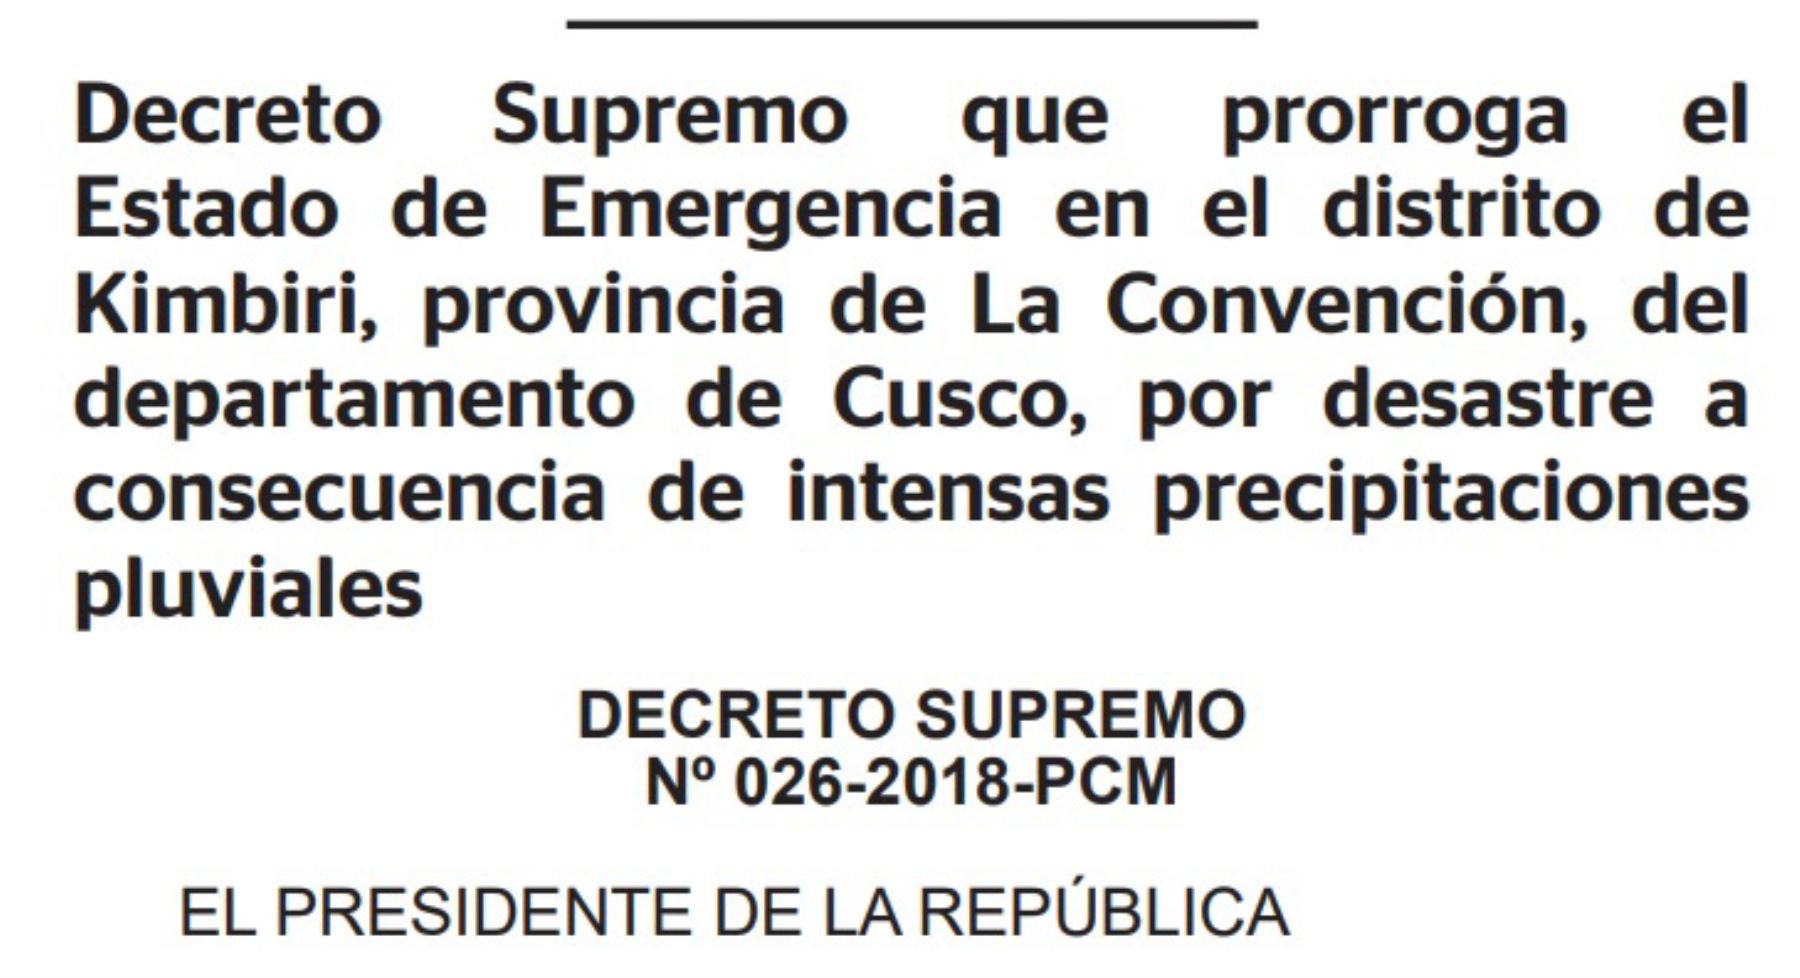 El Ejecutivo prorrogó por el término de 60 días calendario, a partir del 13 de marzo de 2018, el estado de emergencia declarado en el distrito de Kimbiri, provincia de La Convención, región  Cusco, debido a los daños provocados por las intensas lluvias.